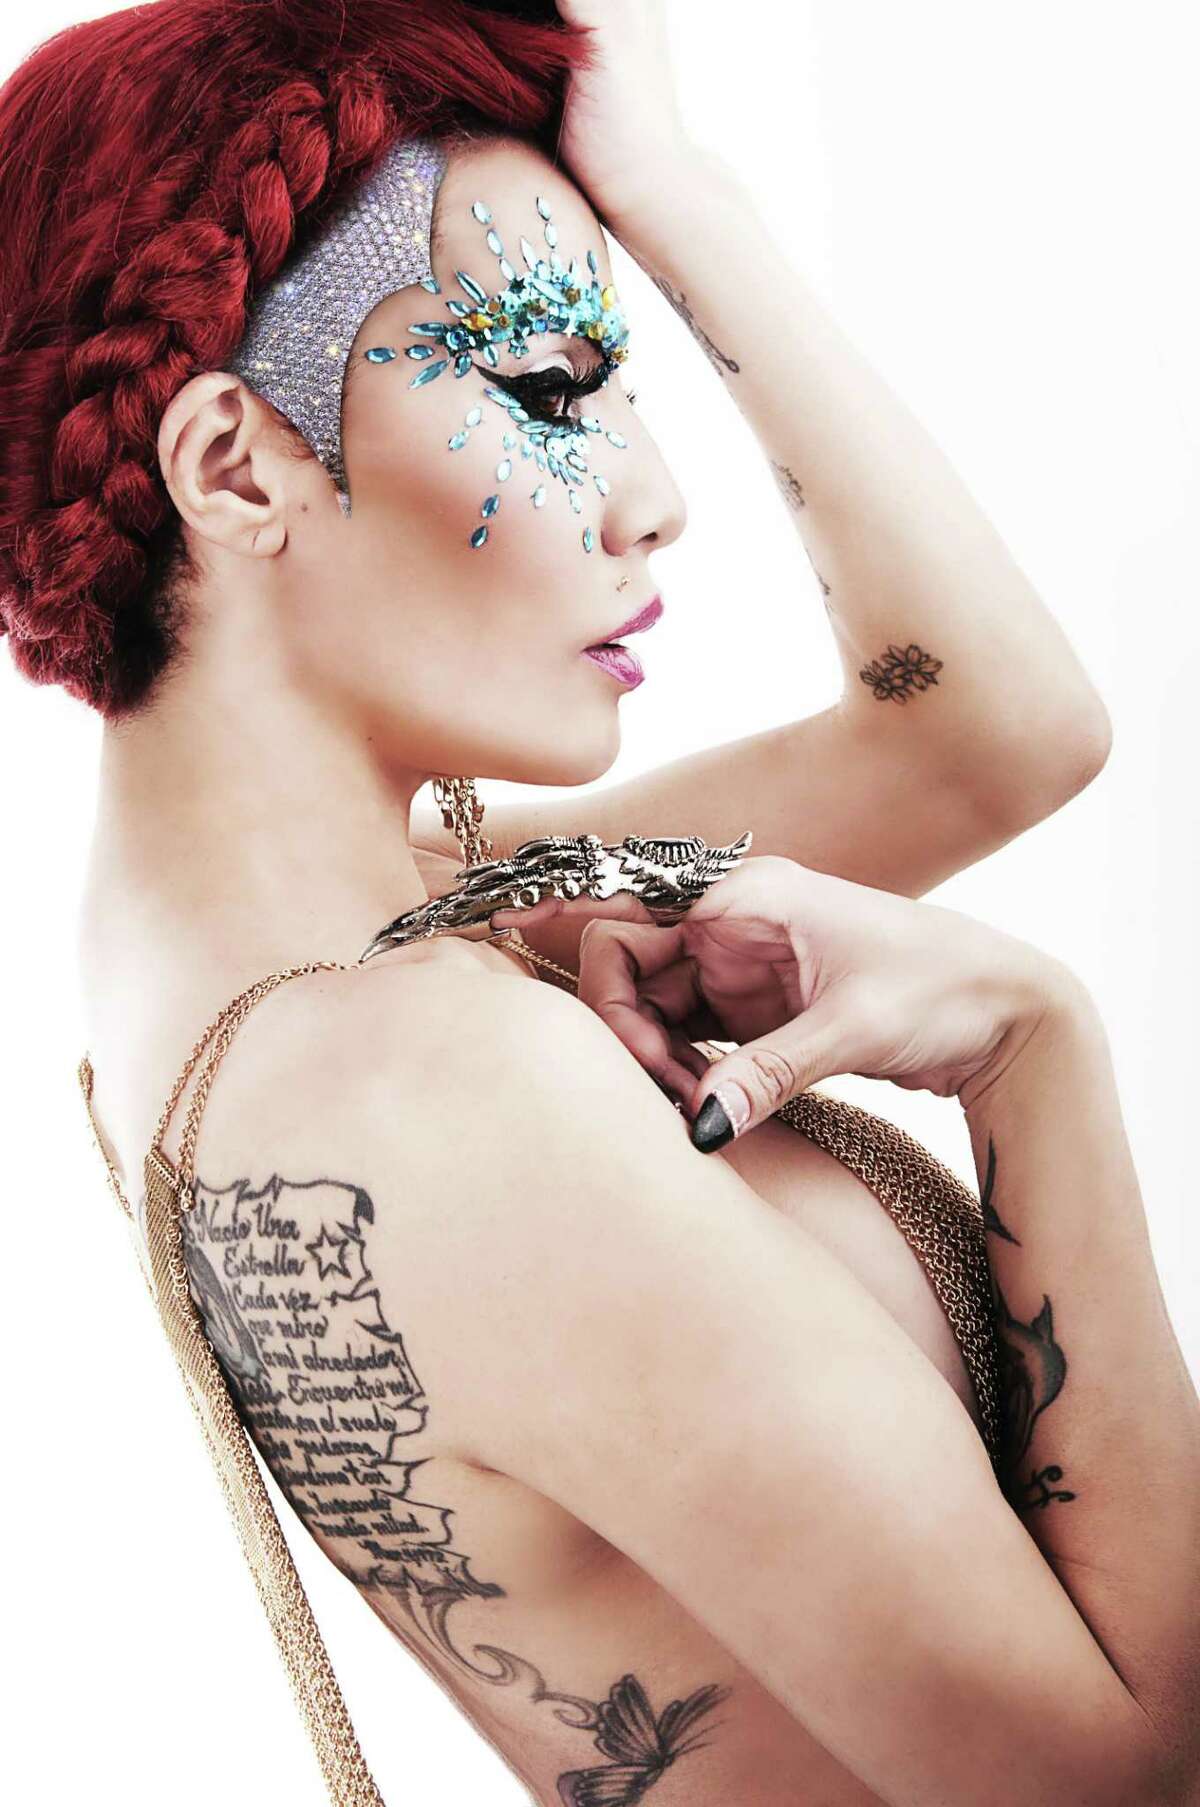 Queen tattoos ivy Gotham: 15